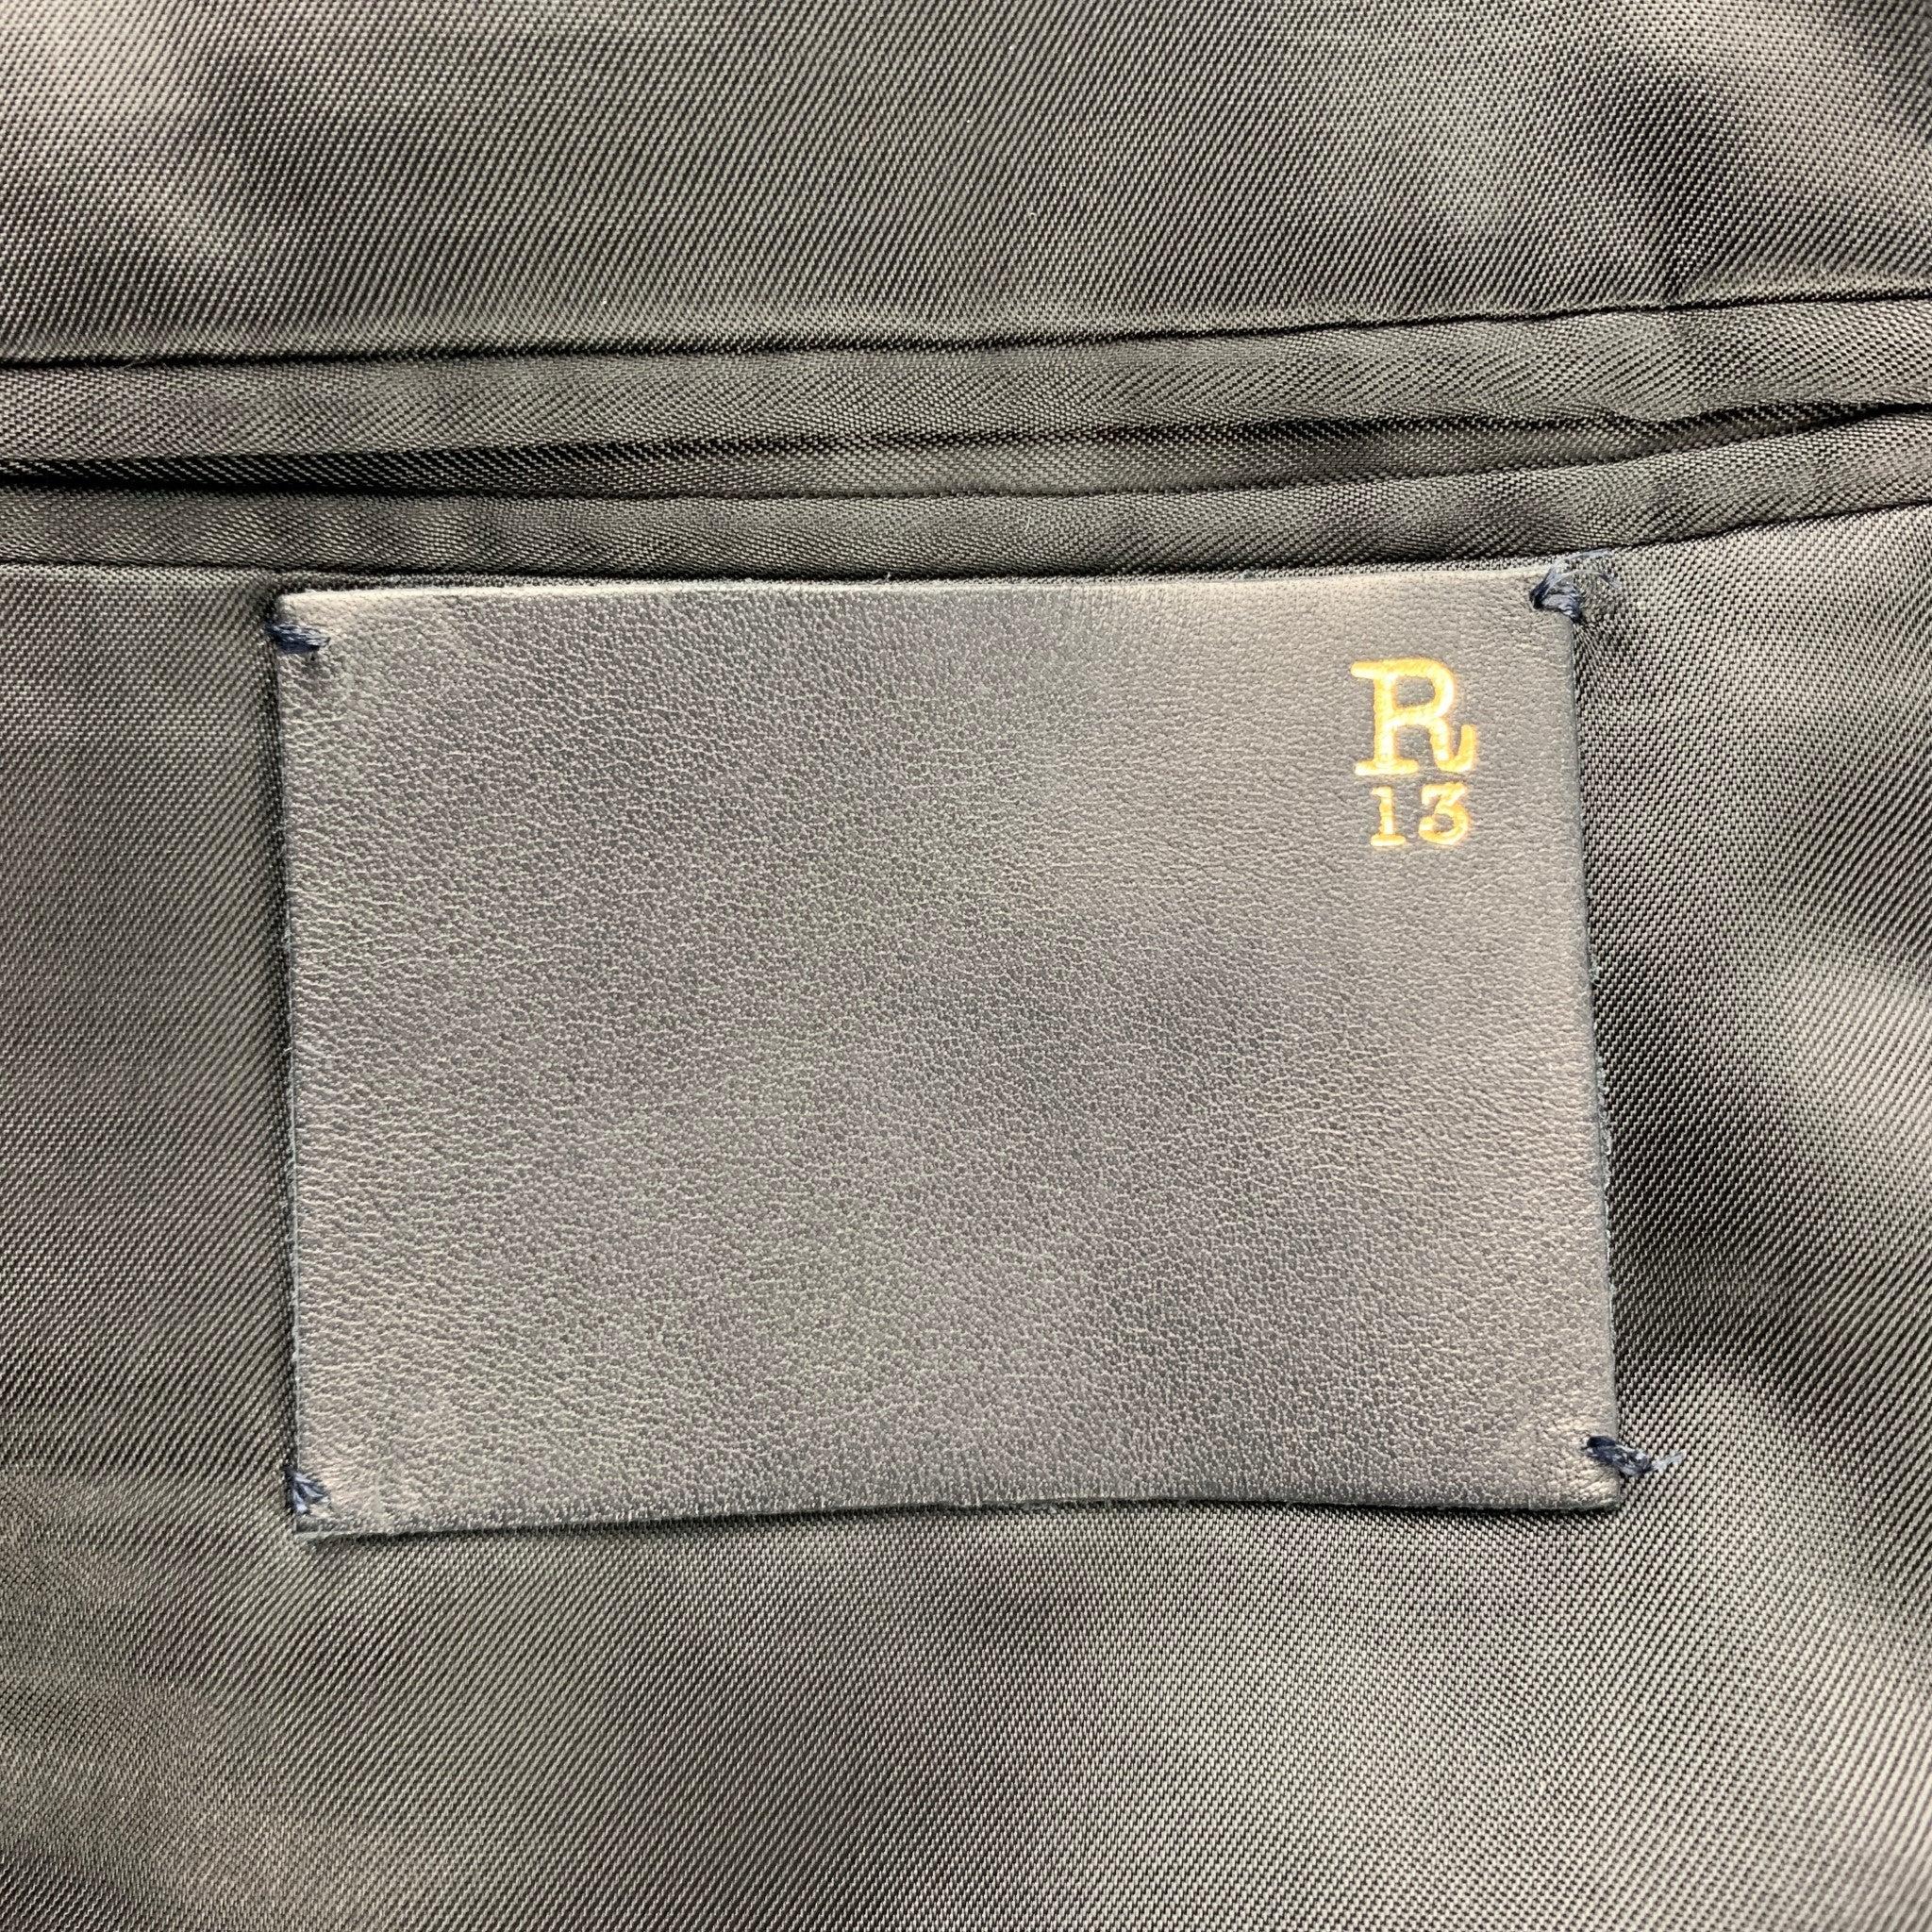 R13 Size 40 Black Embroidery Cotton Notch Lapel Sport Coat For Sale 2